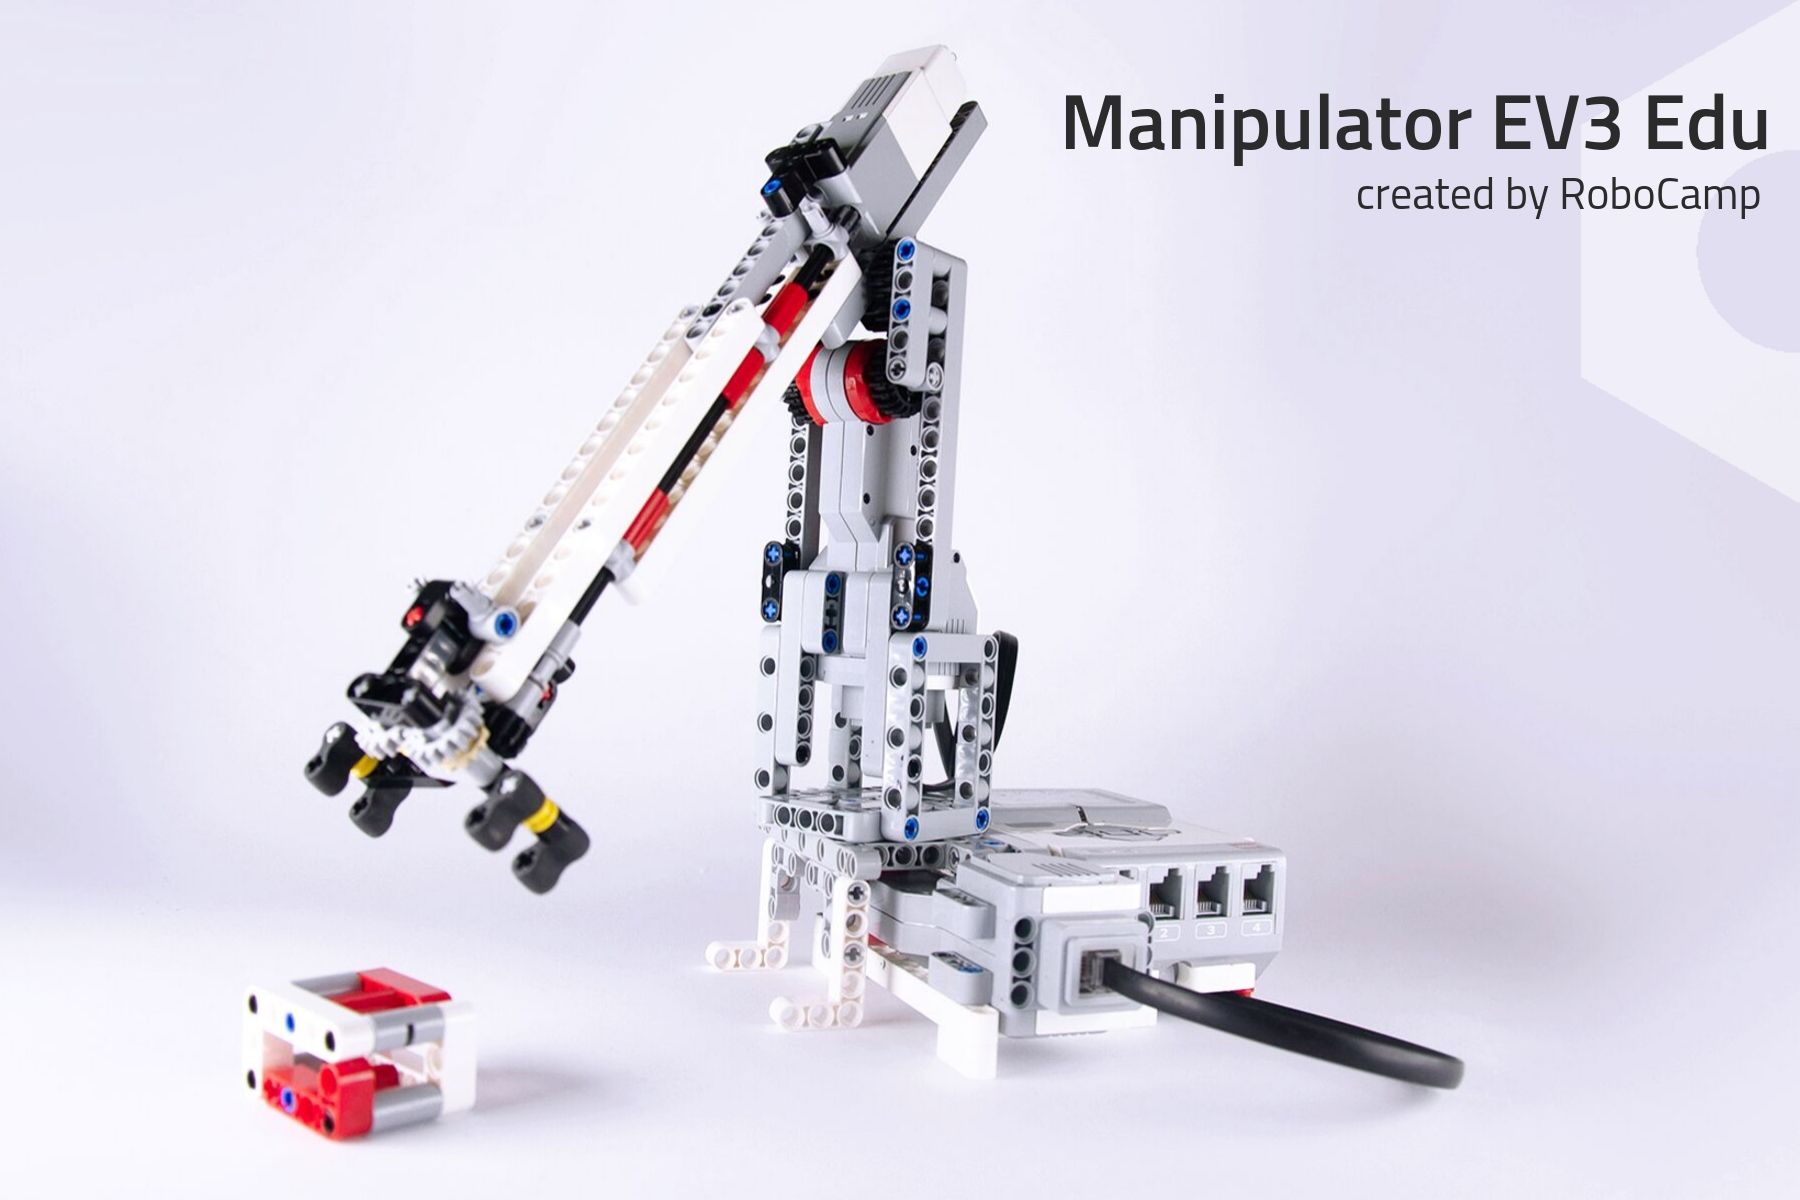 RoboCamp Manipulator for Mindstorms EV3 Education